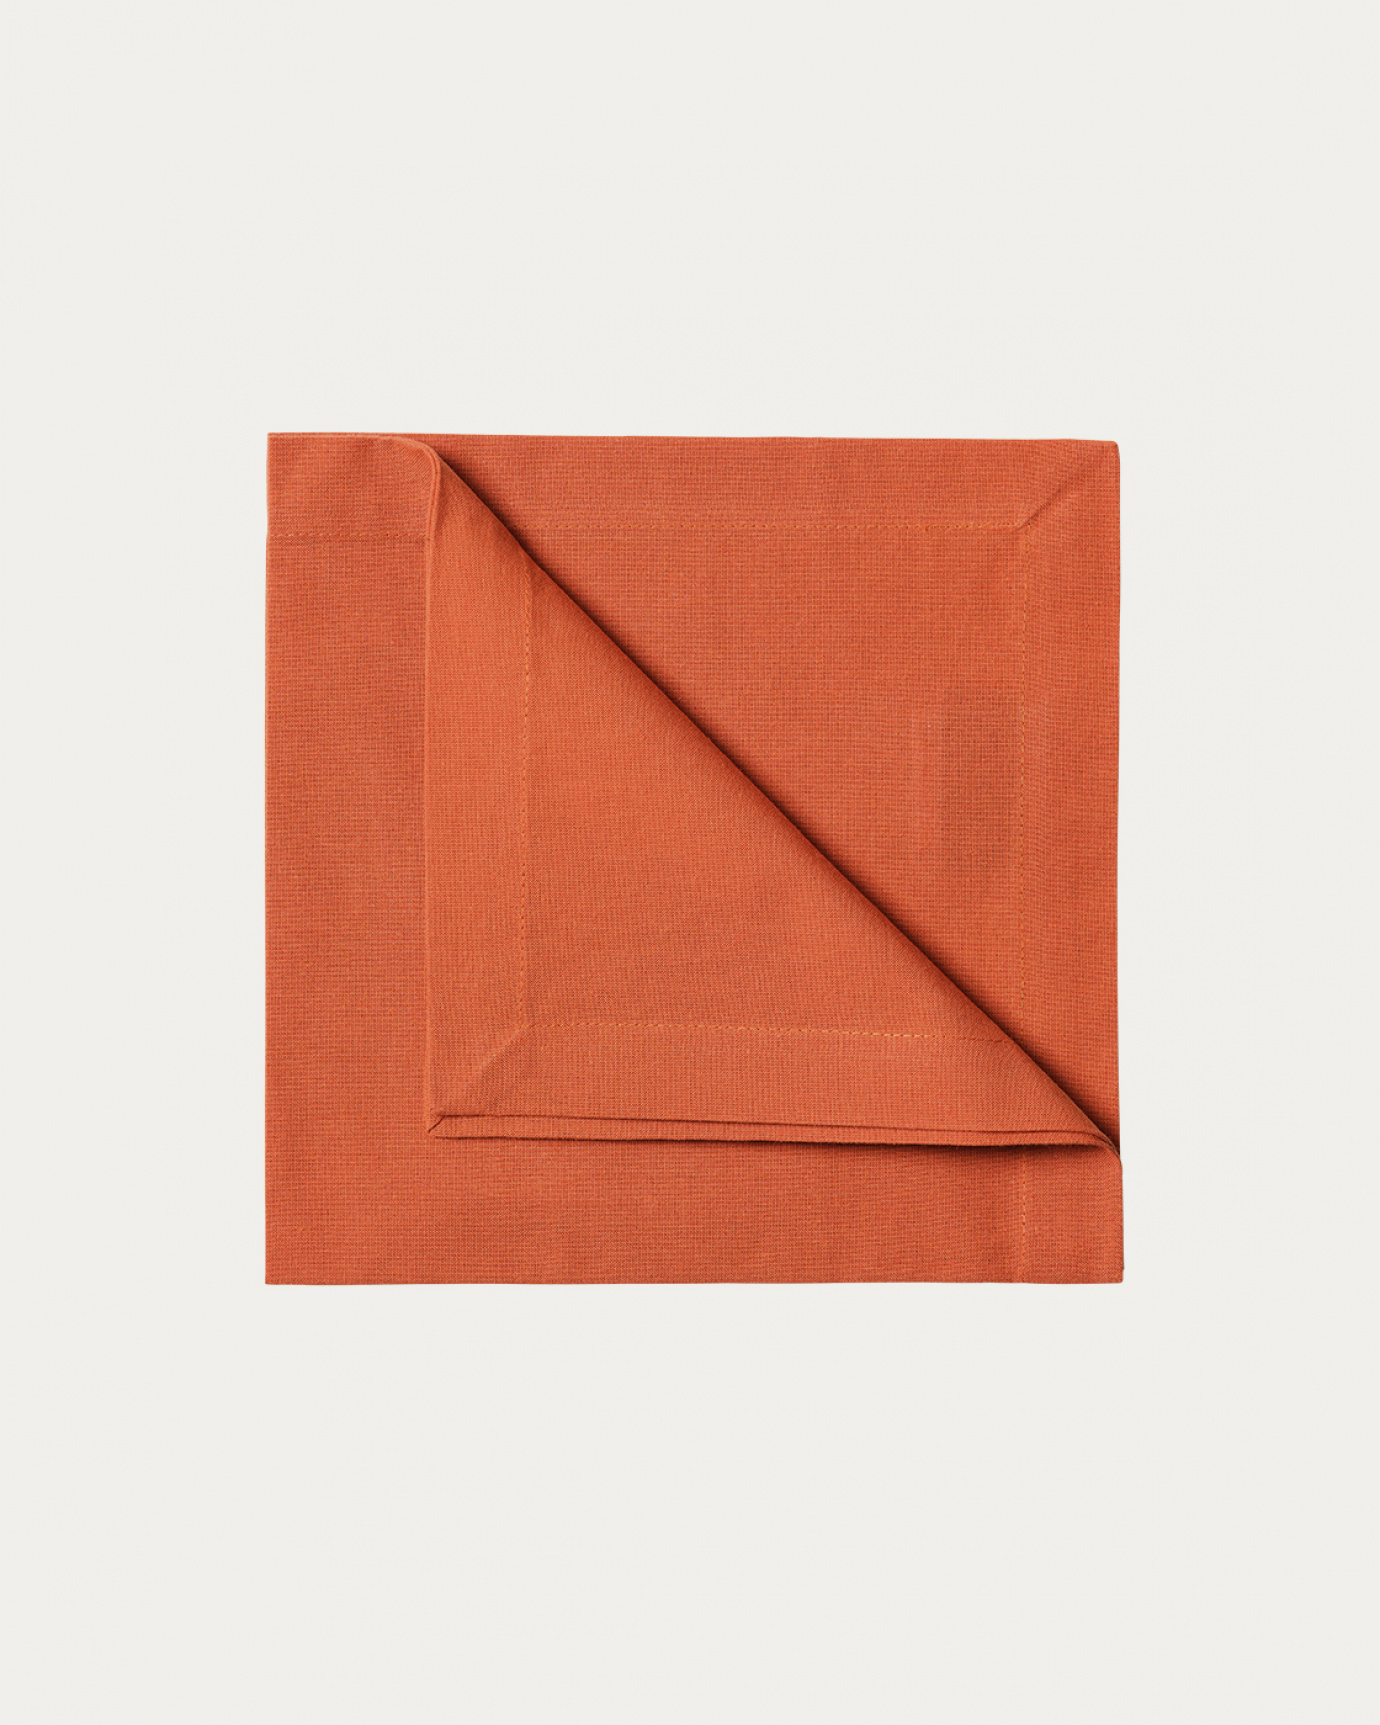 Image du produit serviette de table ROBERT orange rouillé en coton doux de LINUM DESIGN. Taille 45 x 45 cm et vendu en lot de 4.